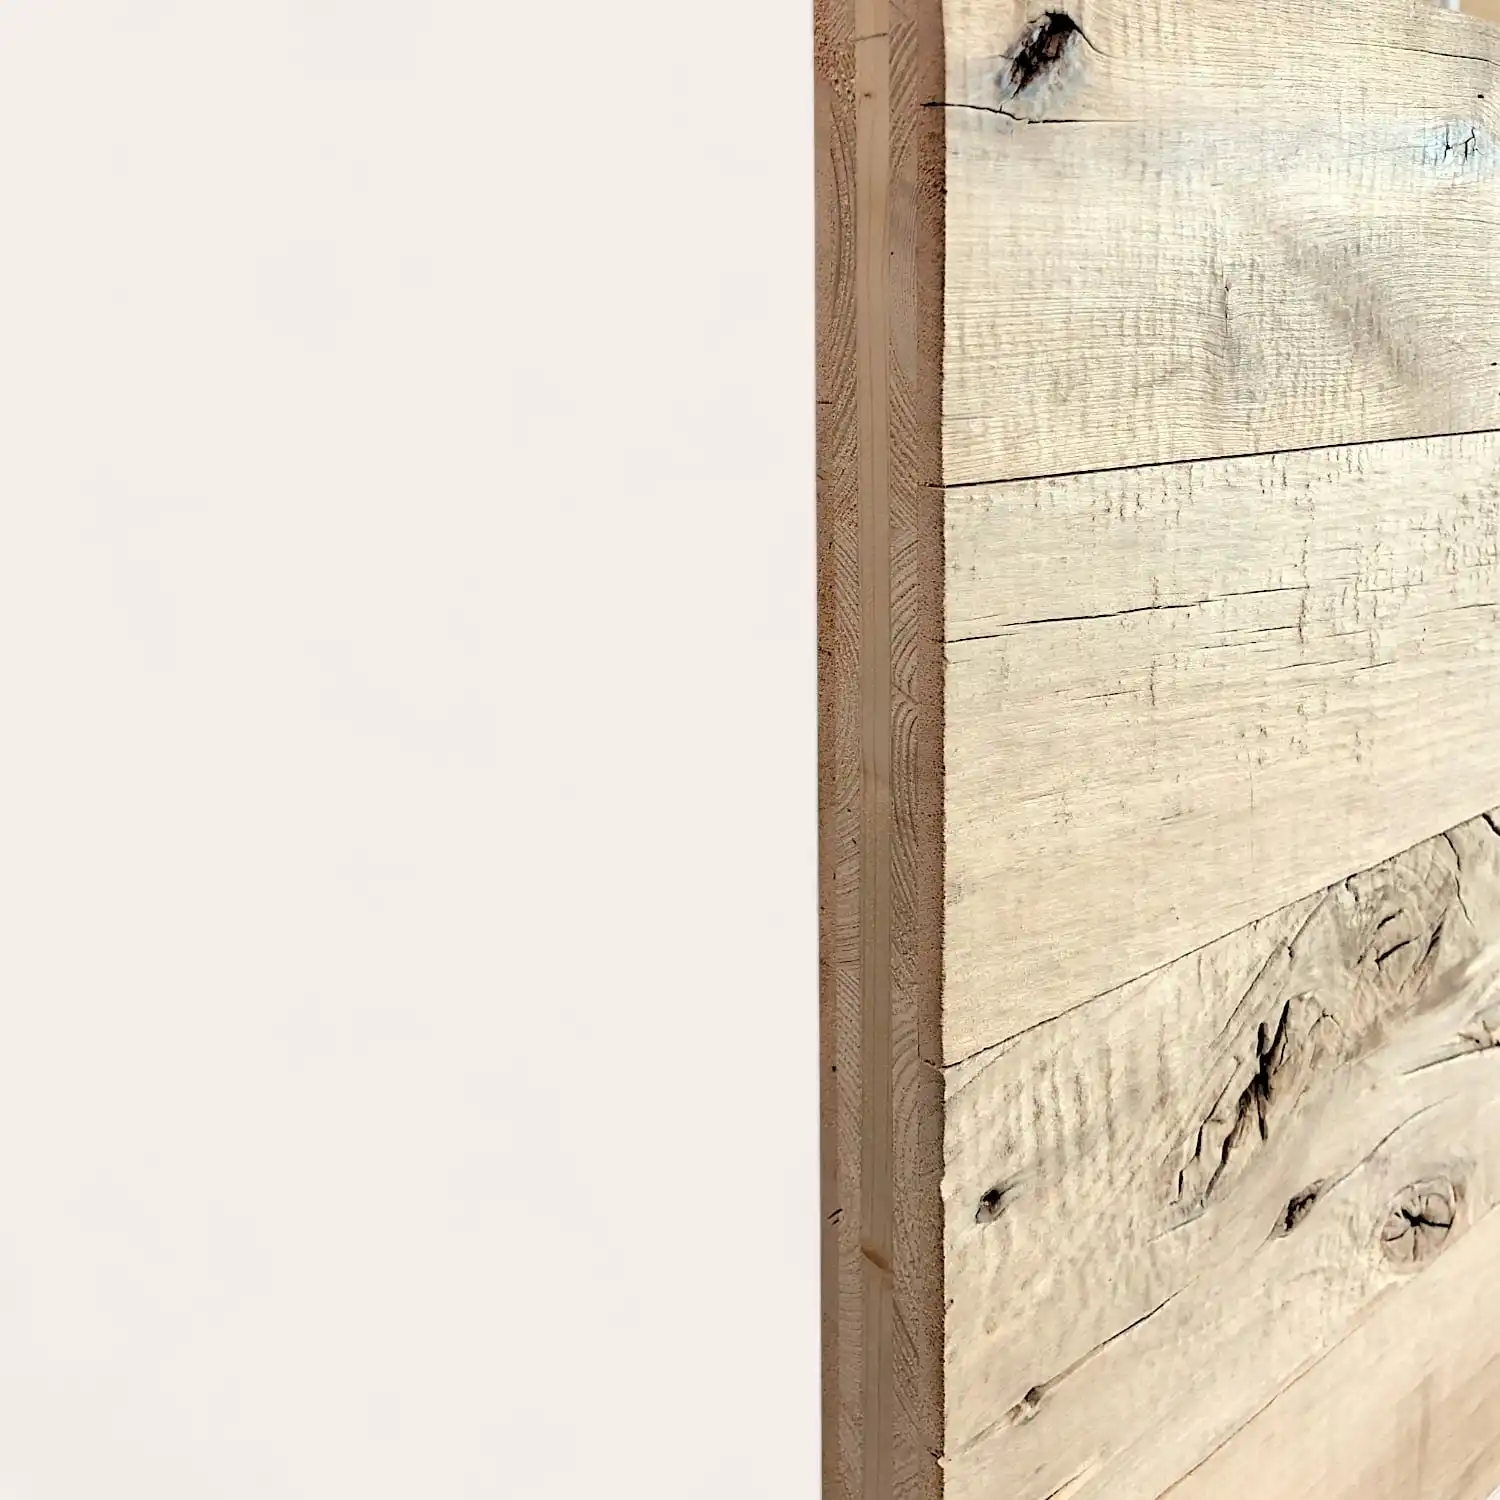  Vue latérale d'une planche de bois montrant des détails de surface texturés et des motifs de grain de panneaux vieux bois, sur un fond blanc uni. 